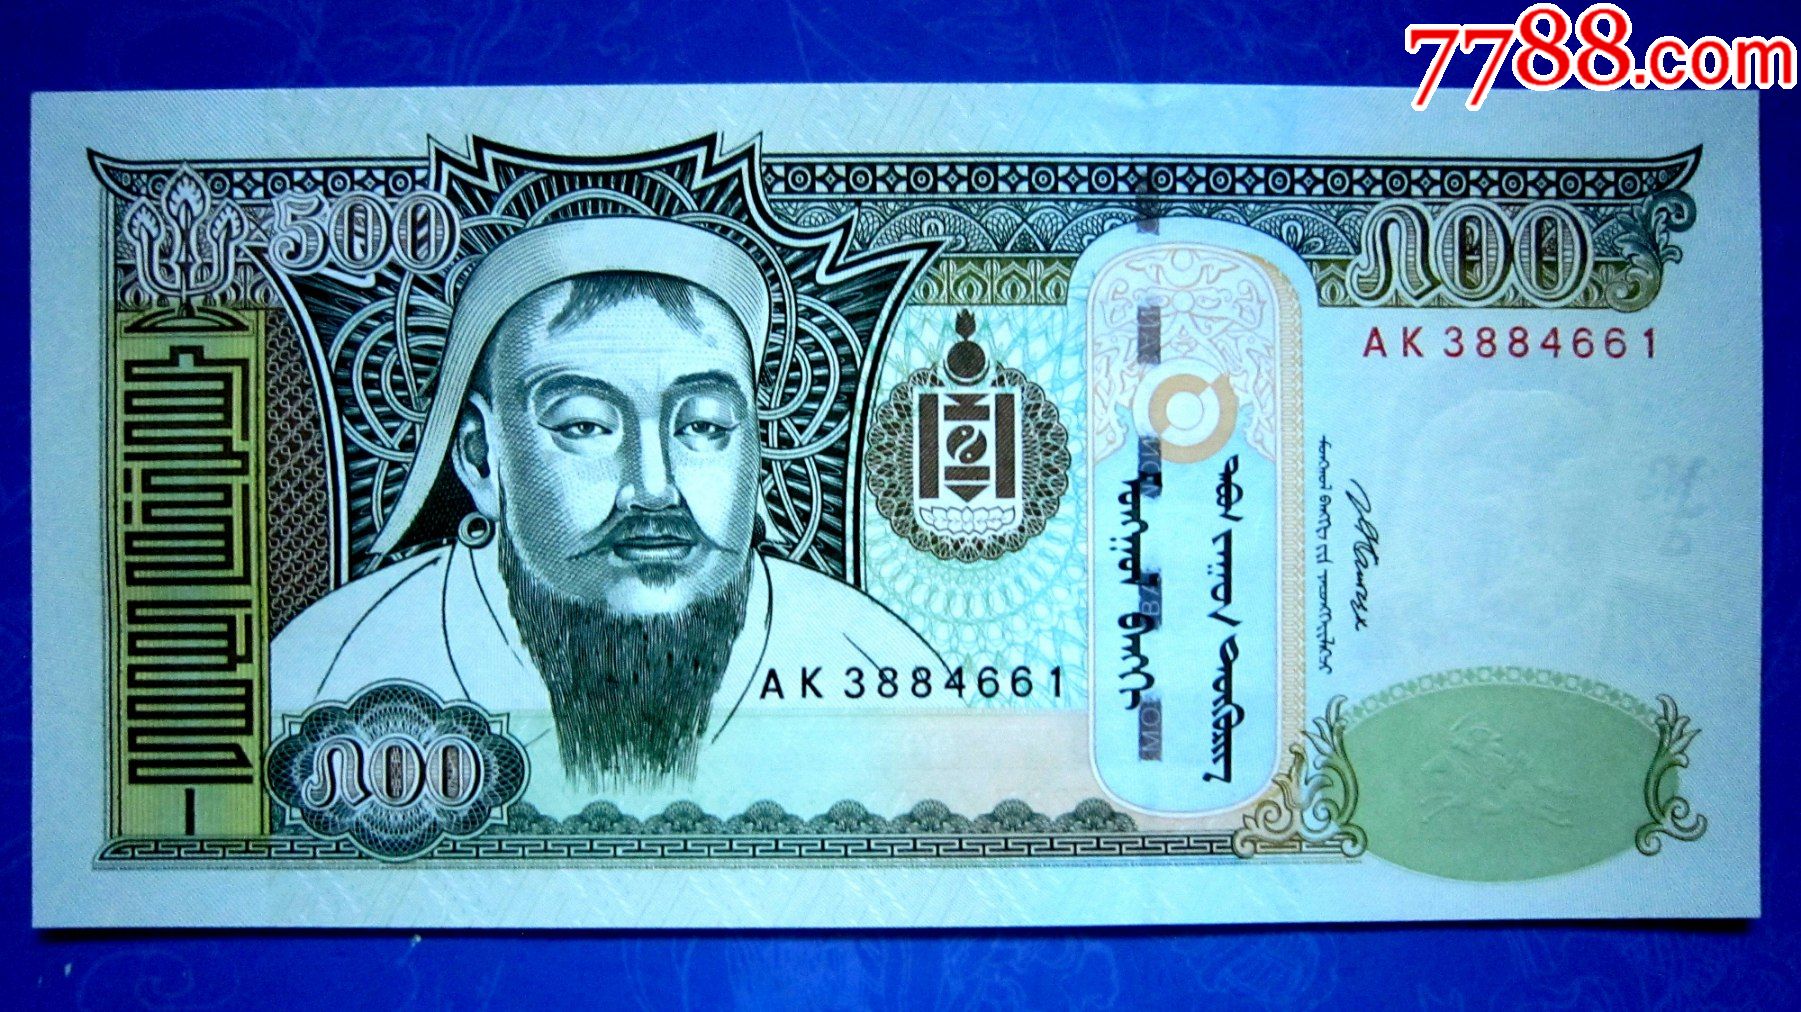 蒙古人民共和国货币图片